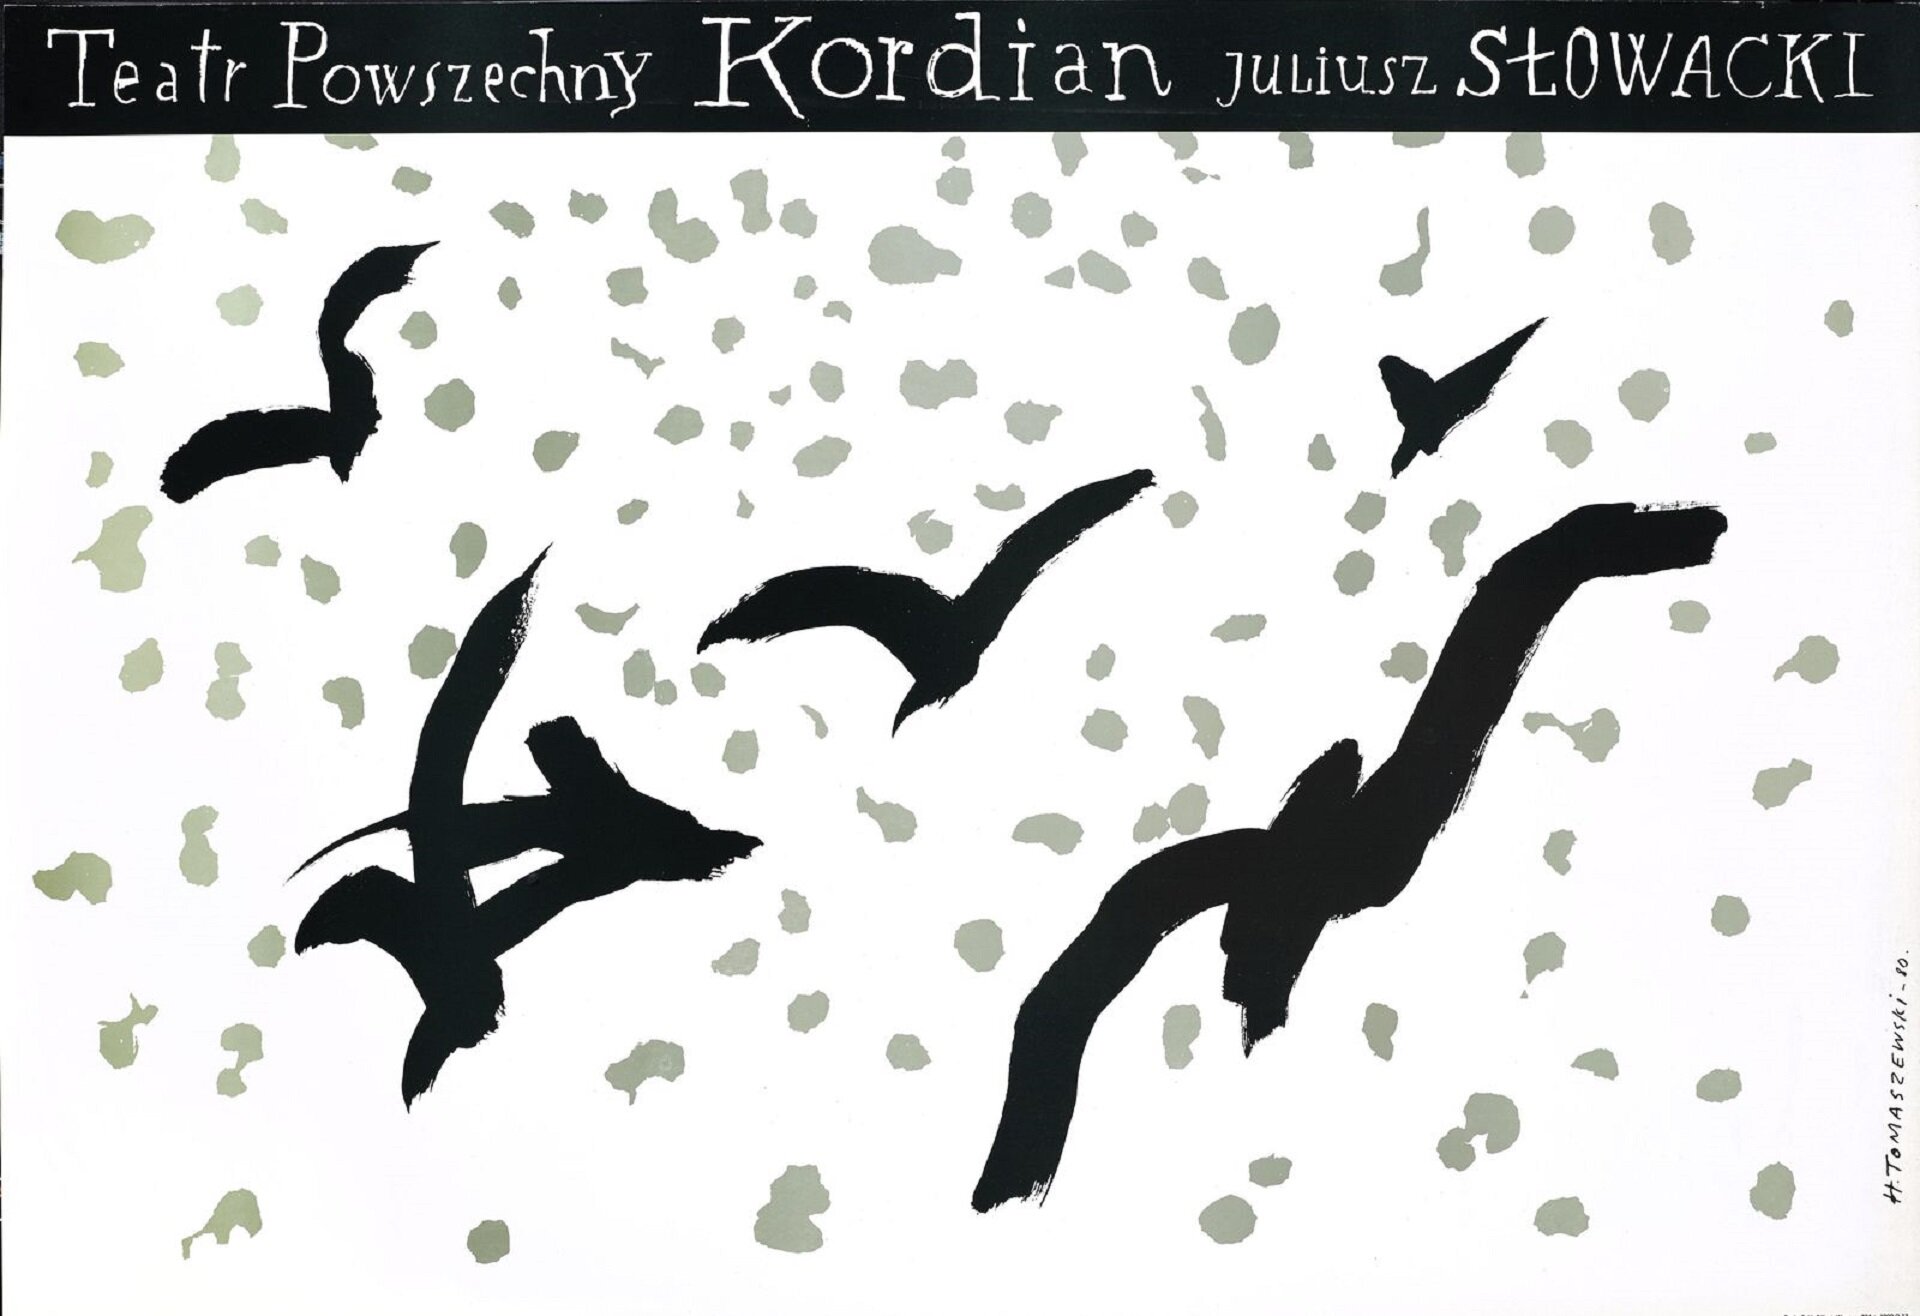 Ilustracja przedstawia plakat do przedstawienia „Kordiana” Juliusza Słowackiego, autorstwa Henryka Tomaszewskiego. Horyzontalna kompozycja ukazuje namalowane prostą czarną plamą sylwetki sześciu ptaków na białym tle, otoczone szarymi plamkami przywodzącymi na myśl śnieg.  Górną partię grafiki zamyka czarny, prostokątny pas na którym widnieje wykonany białą kreską odręczny napis: „Teatr Powszechny KORDIAN JULIUSZ SŁOWACKI”.